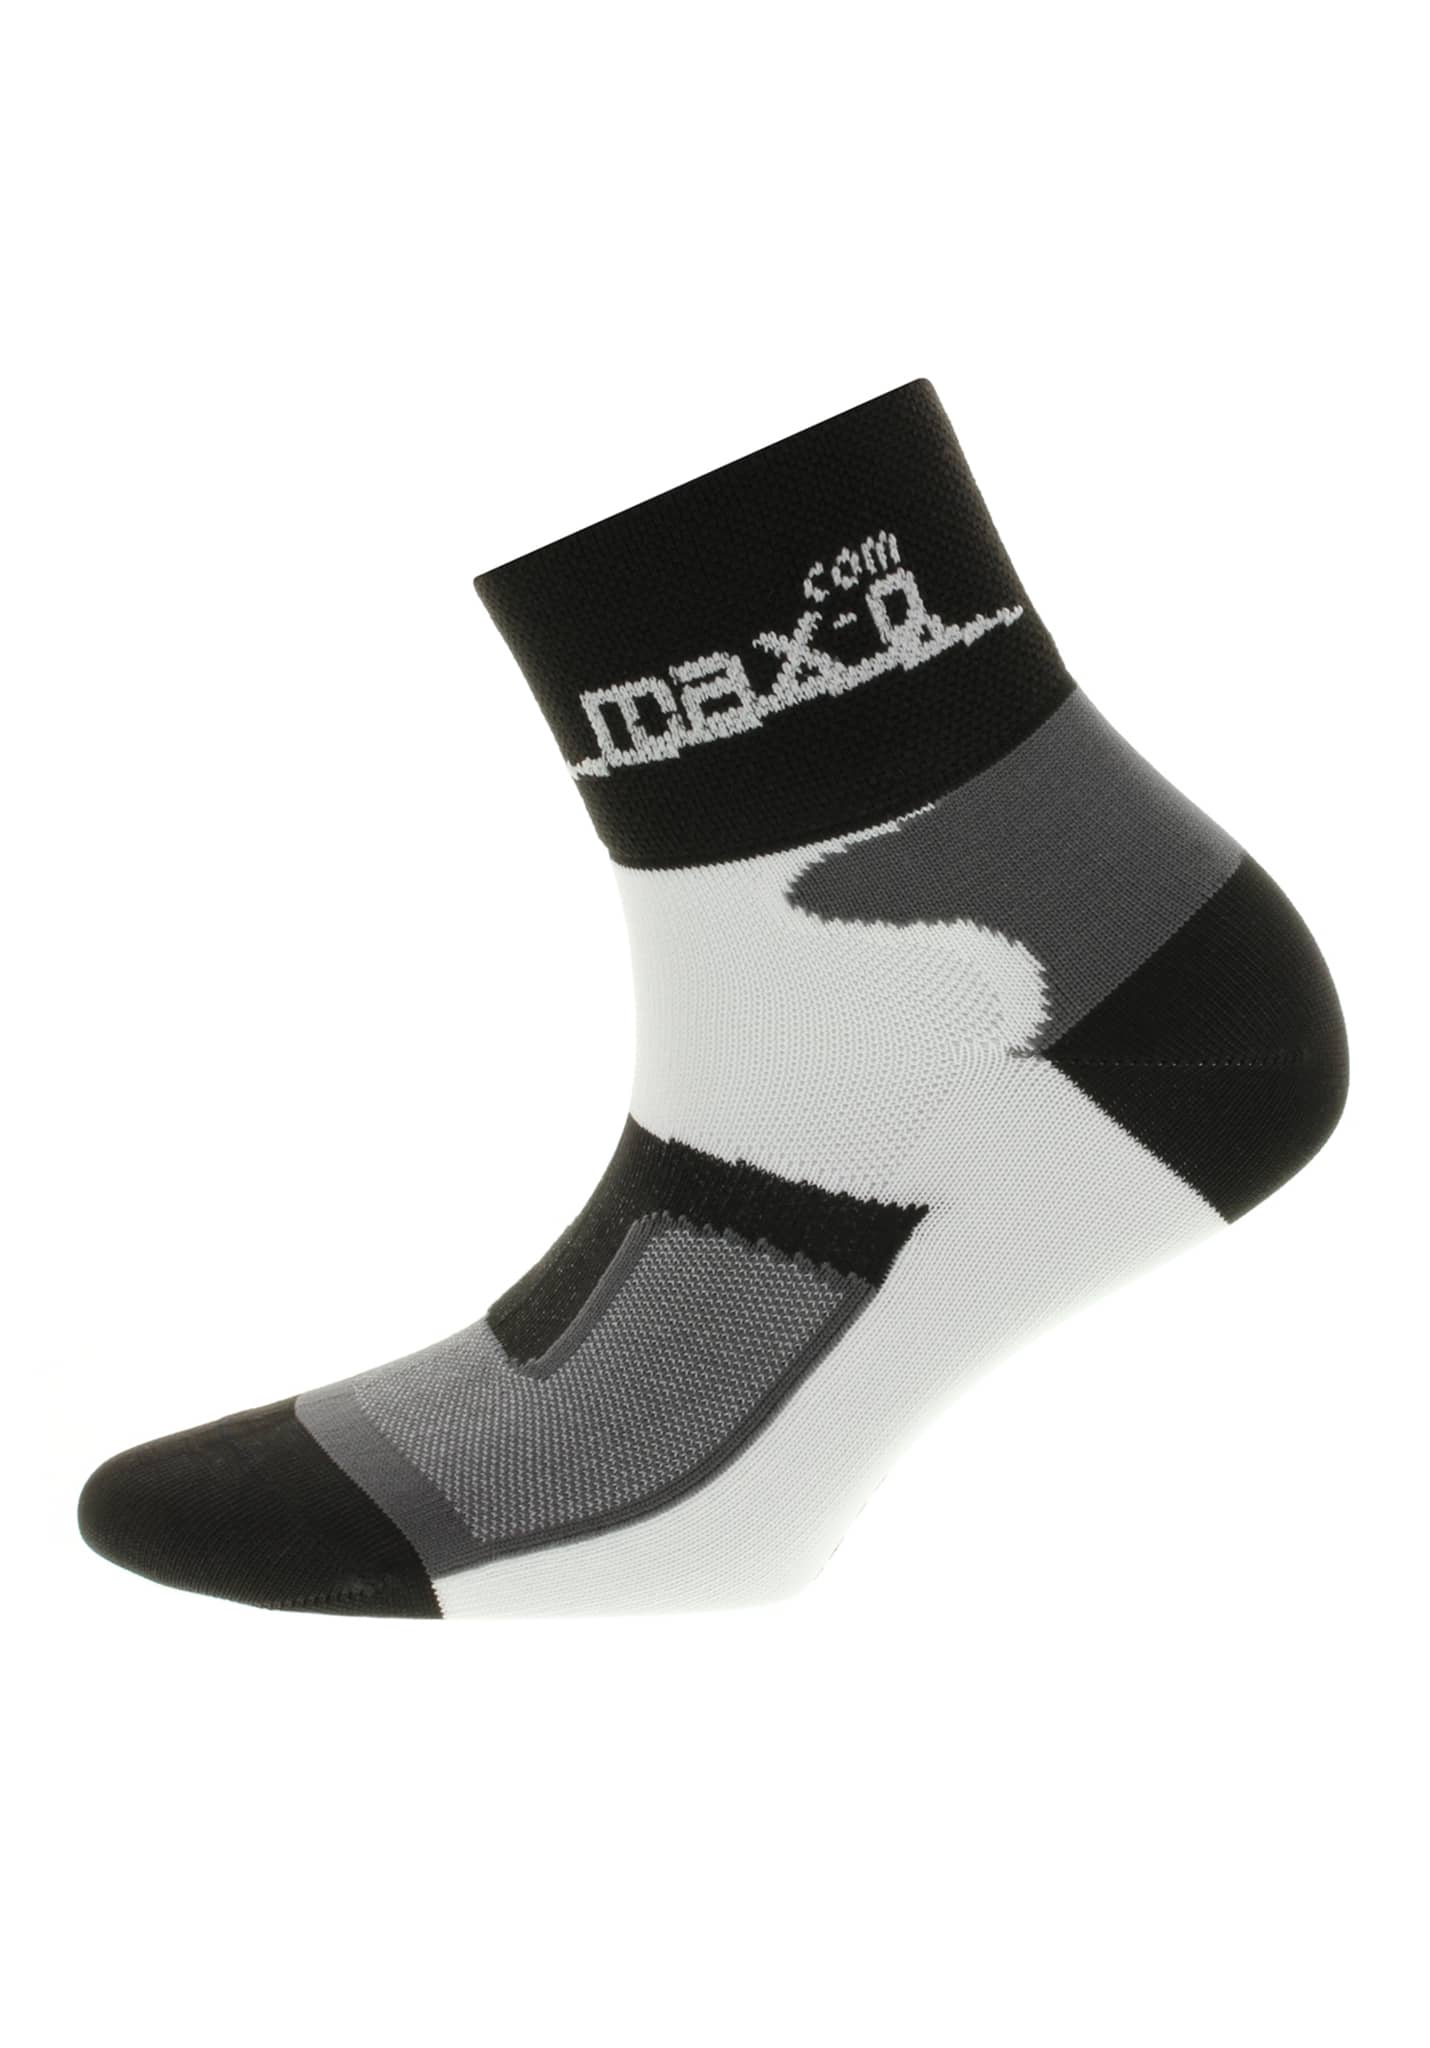 Max-q.com Essential Running Kurze Socken black 47-50